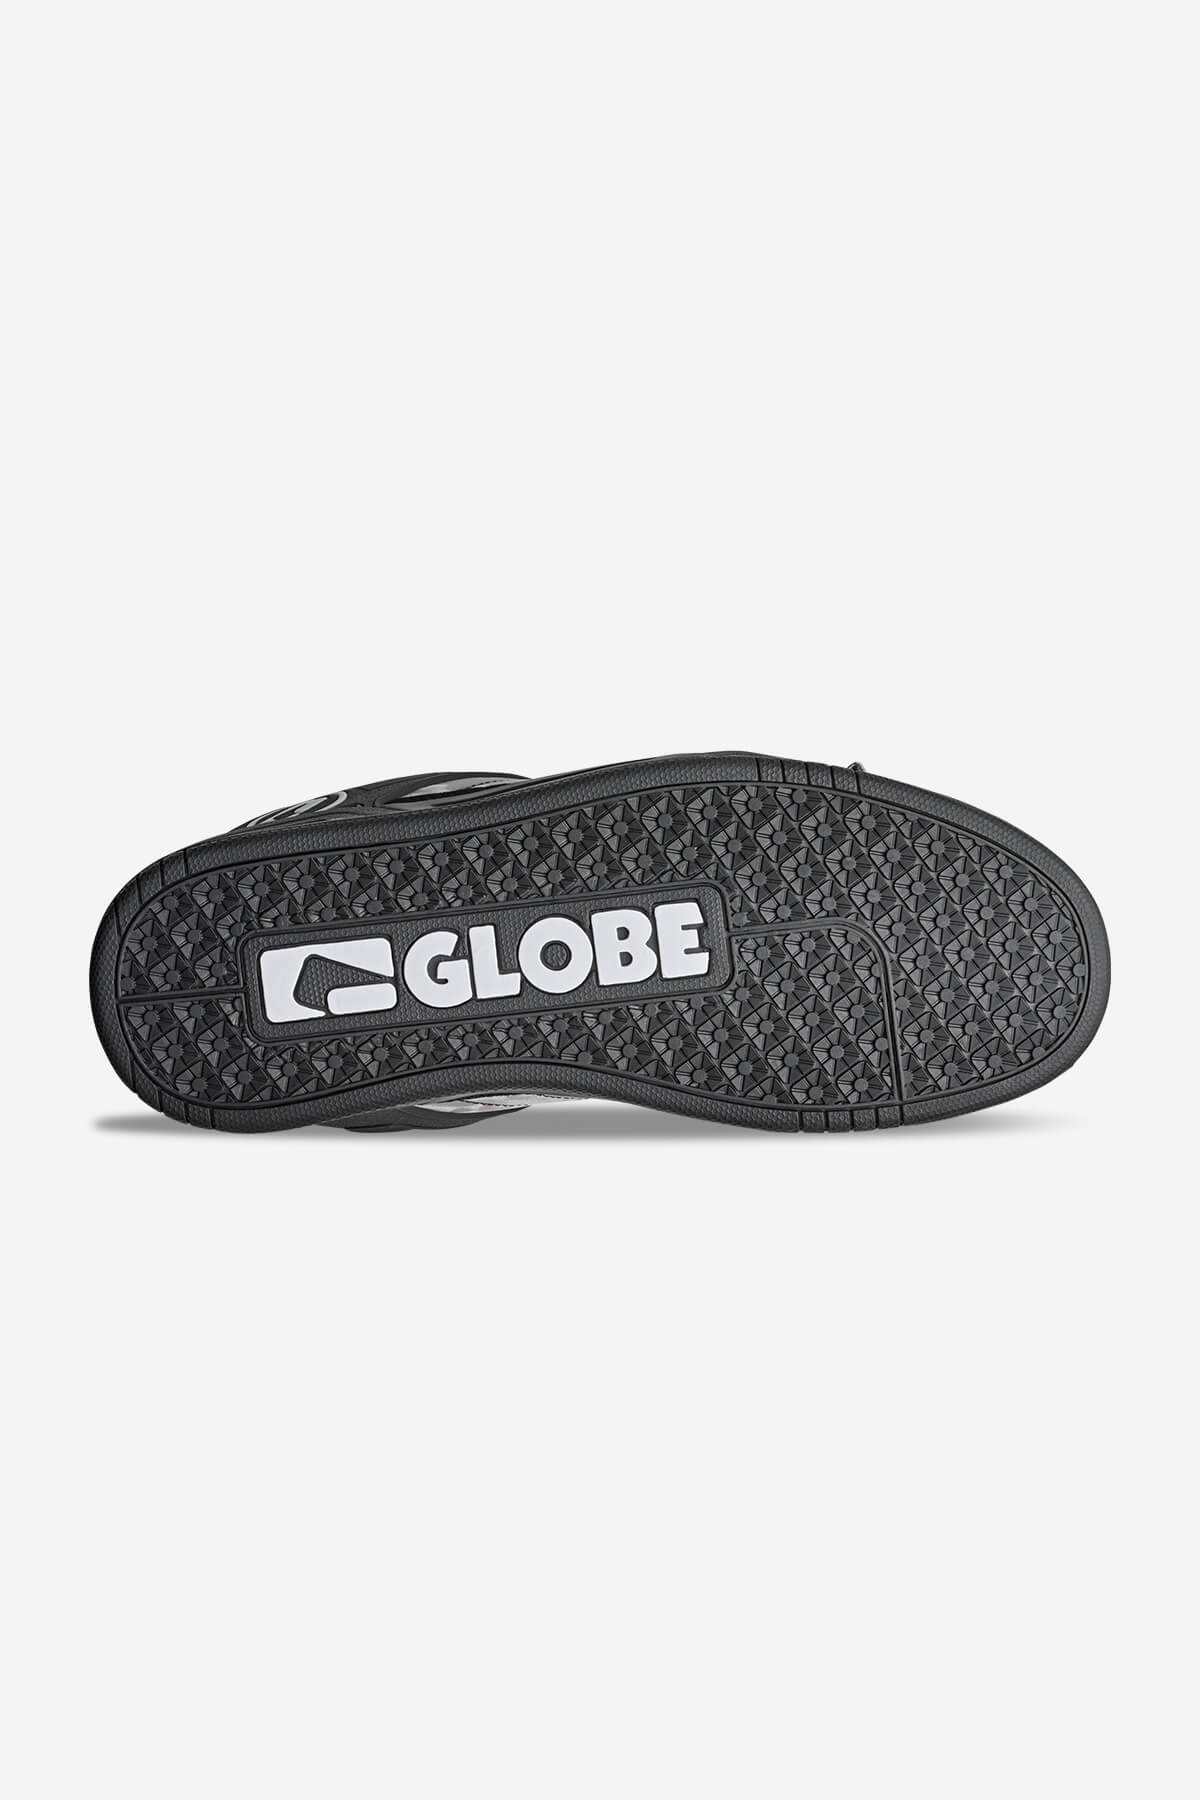 Globe Low shoes Tilt - Black/Phantom/Camo in Black/Phantom/Camo